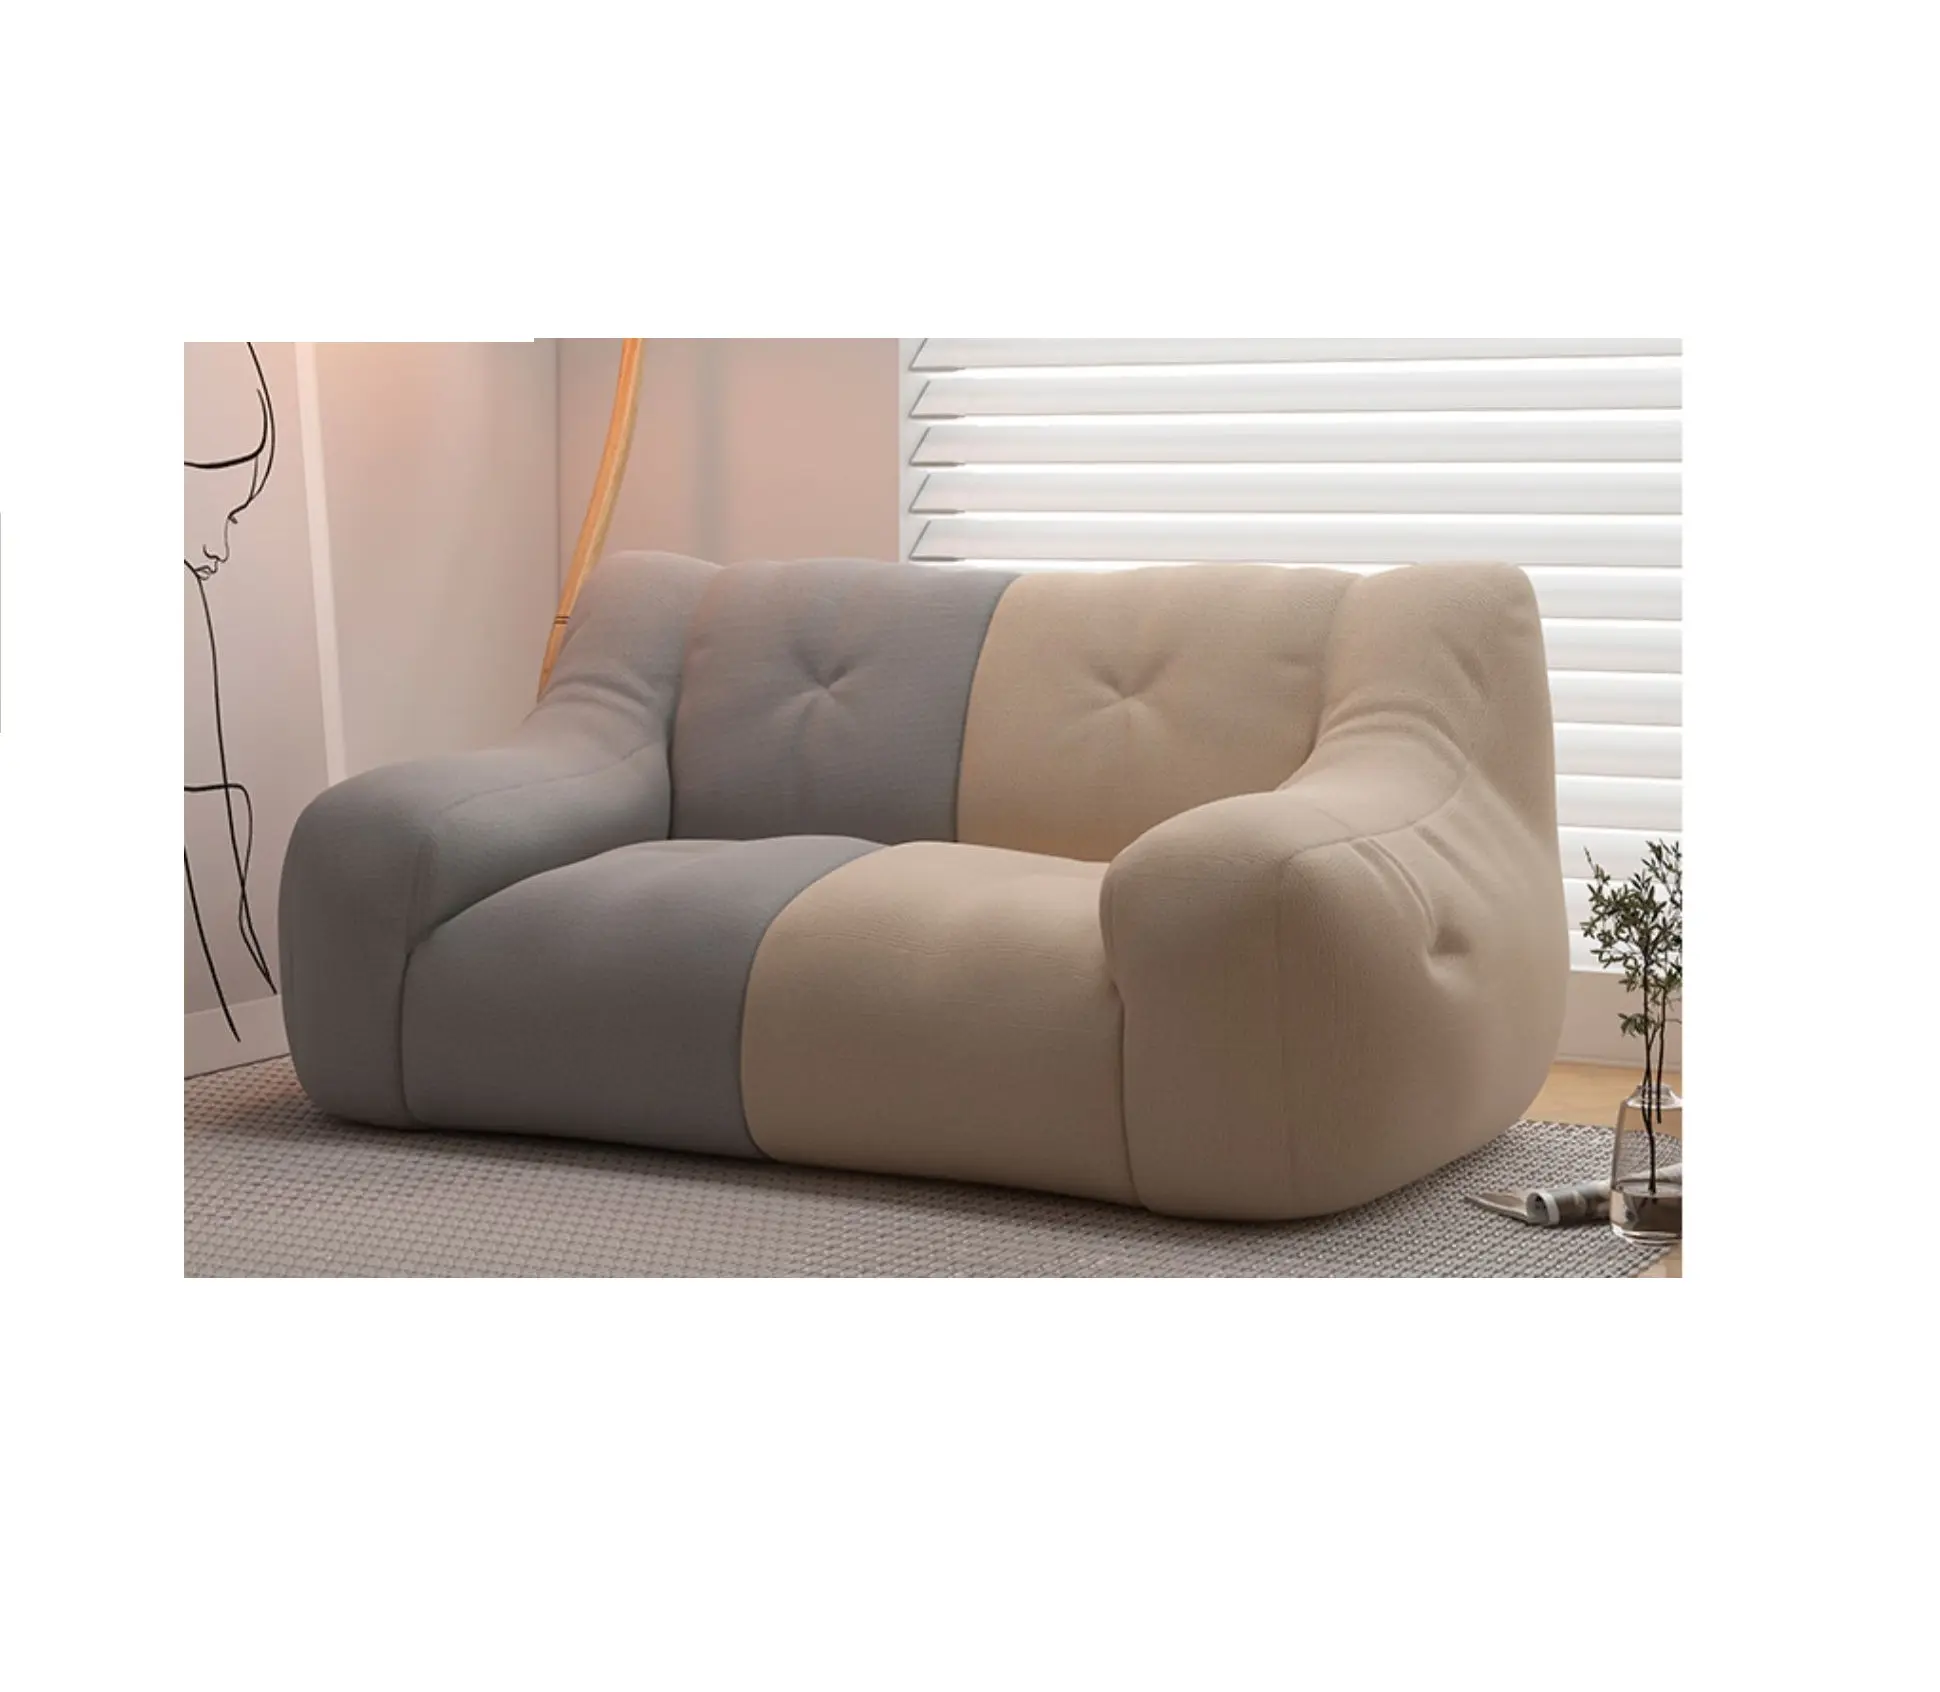 Nueva bolsa de frijoles de tela de colores dobles gris para sofá perezoso con relleno de EPS sala de estar moderna